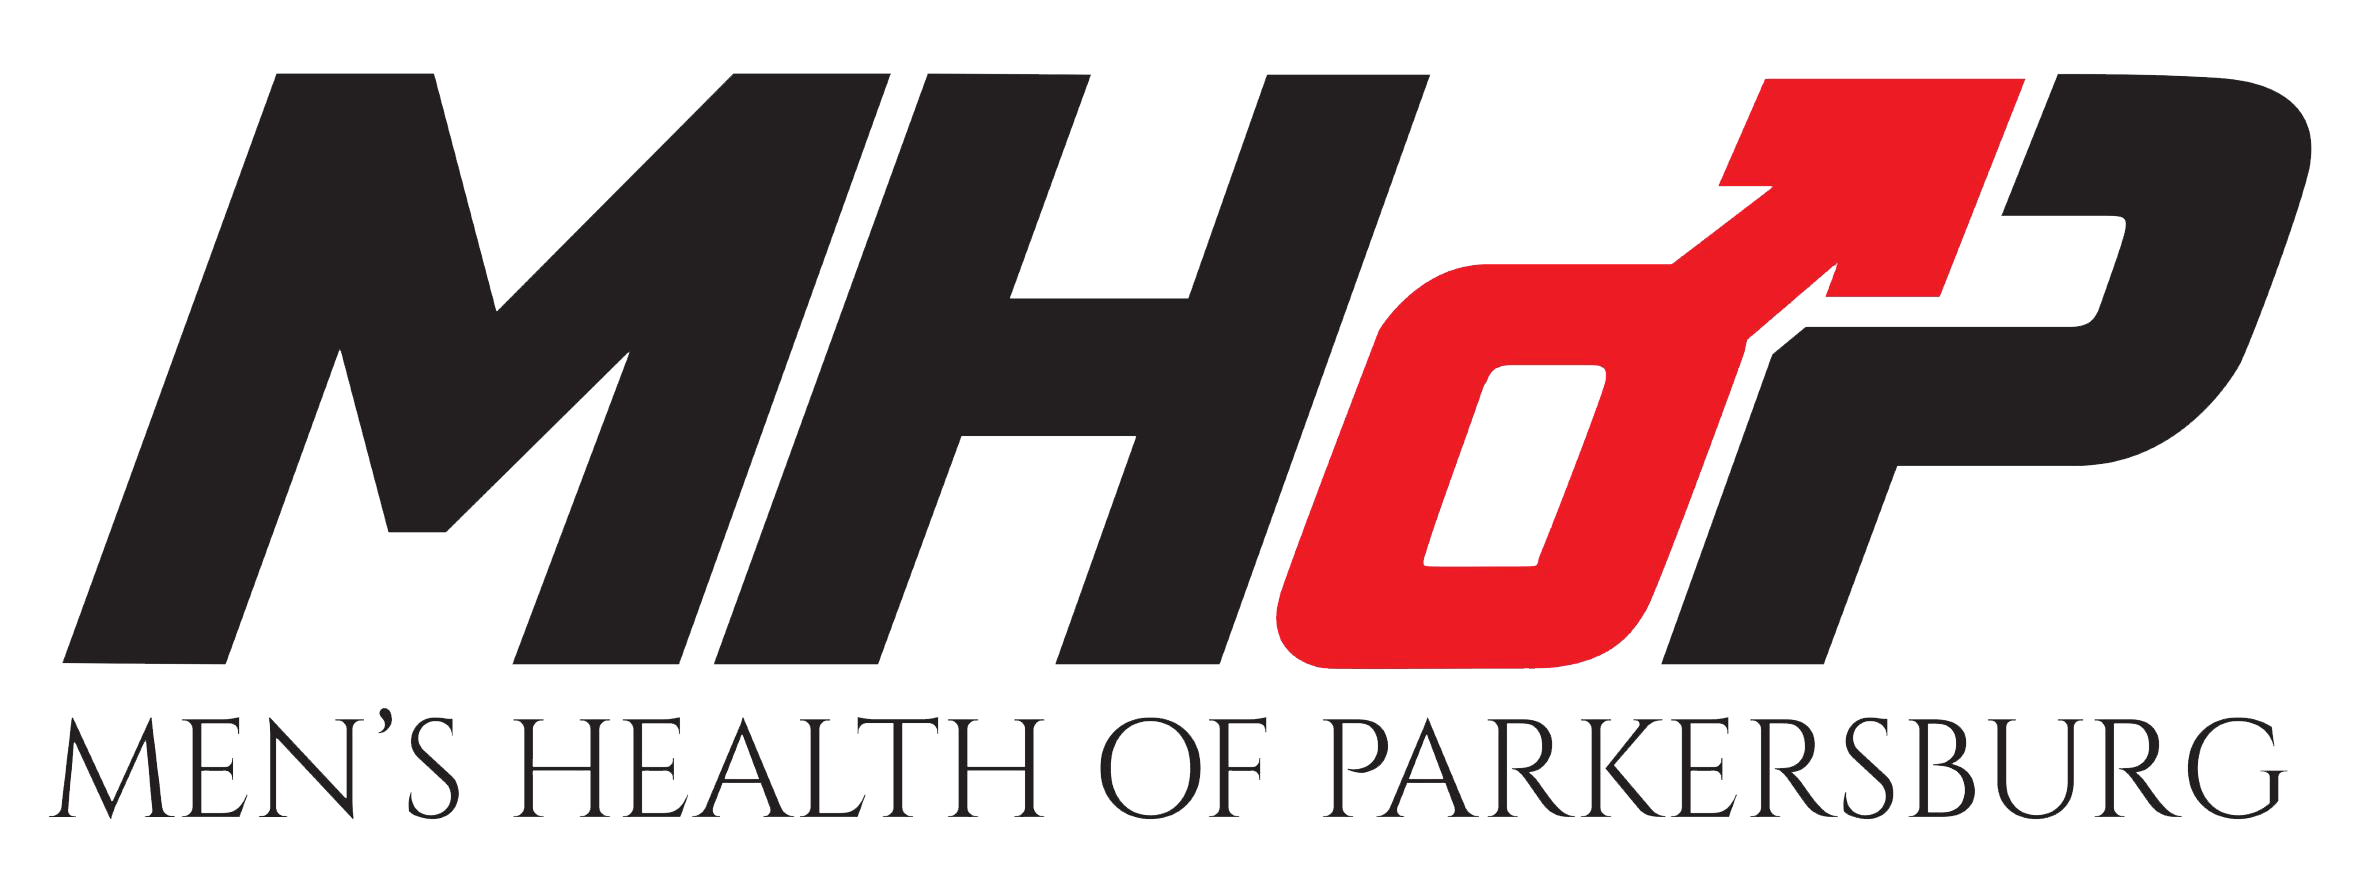 Men's Health of Parkersburg